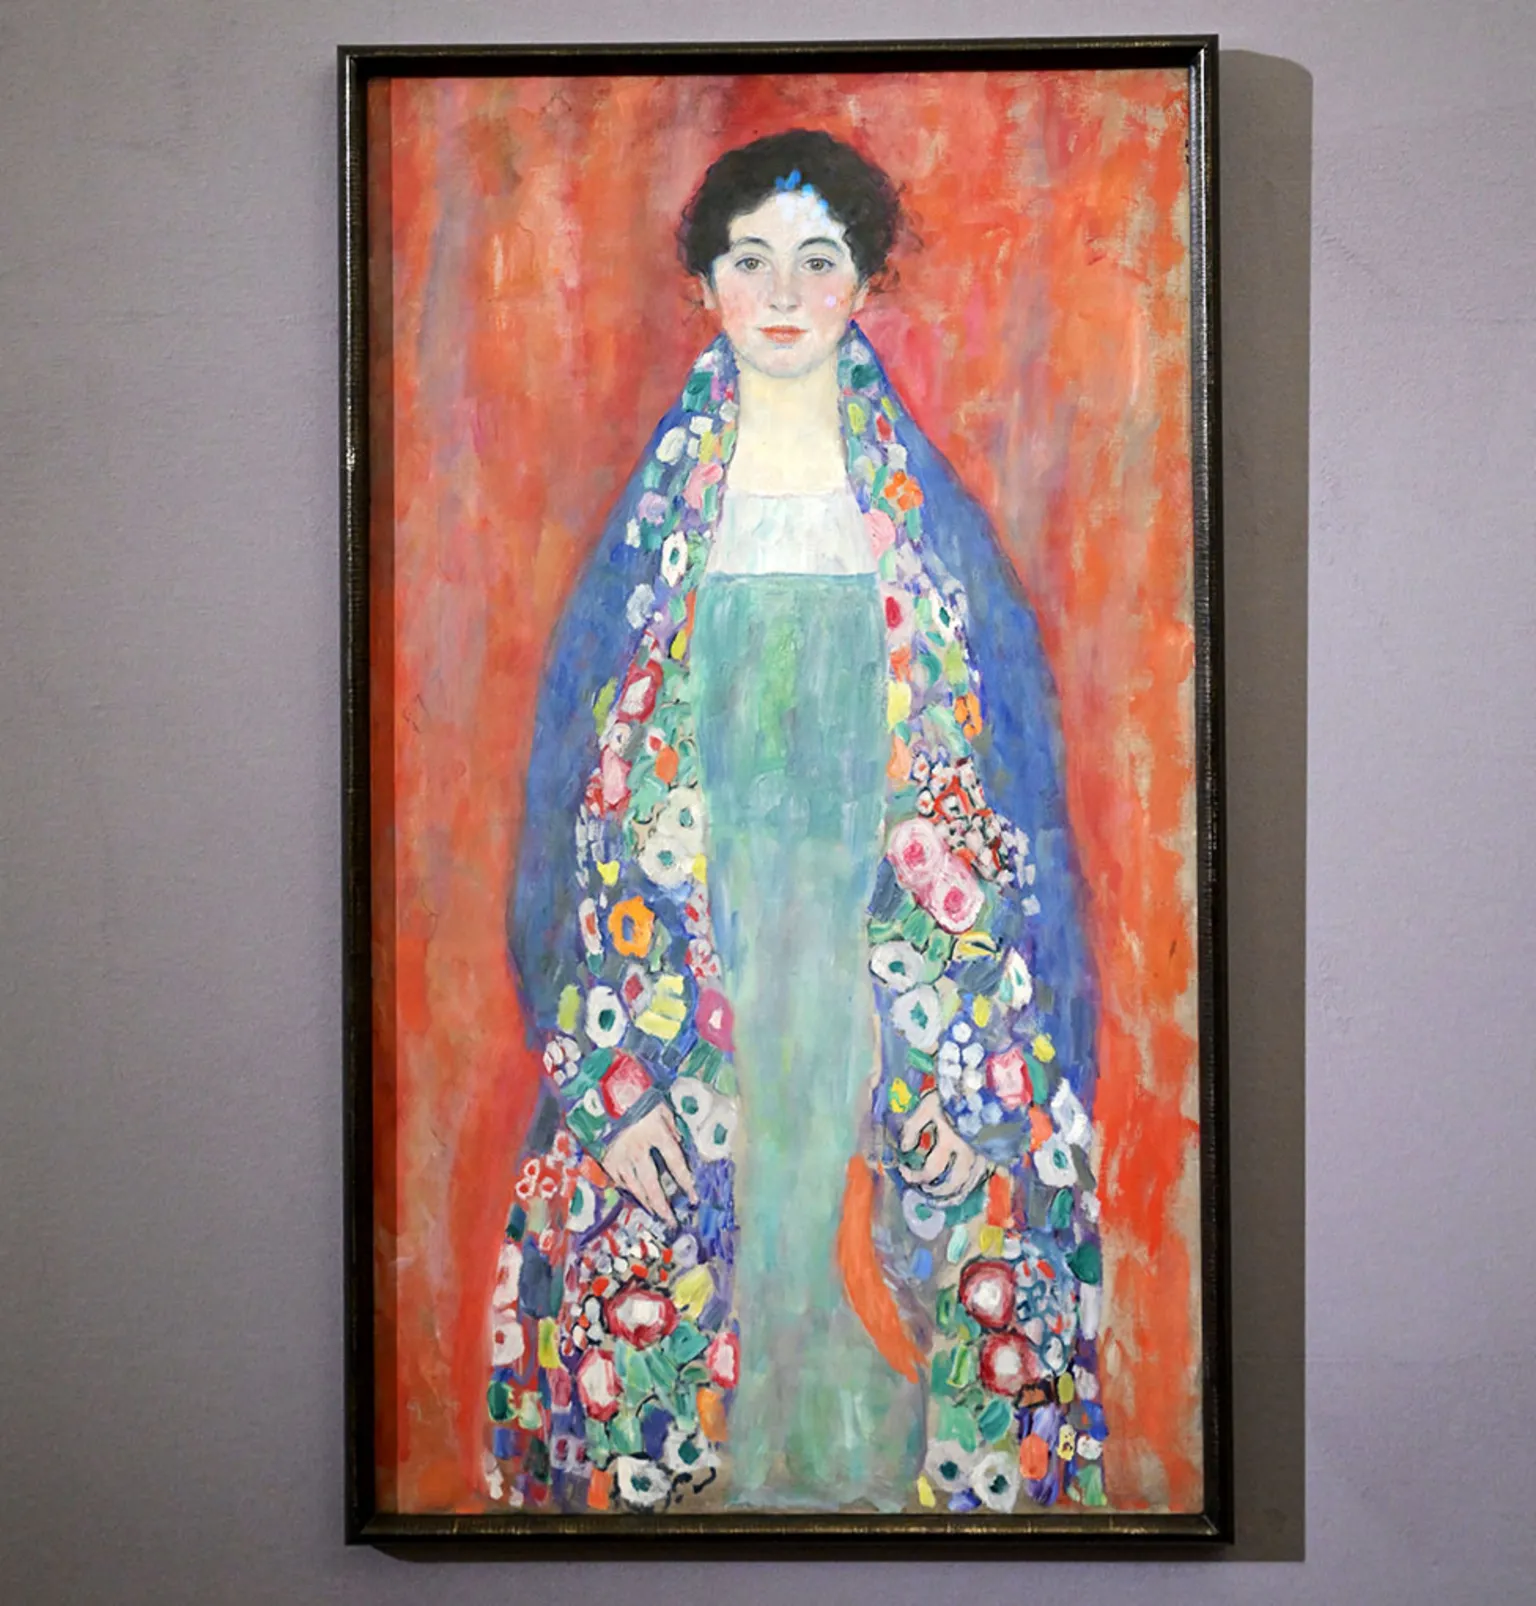 Gustav Klimt portrait found after almost 100 years (bbc.com)